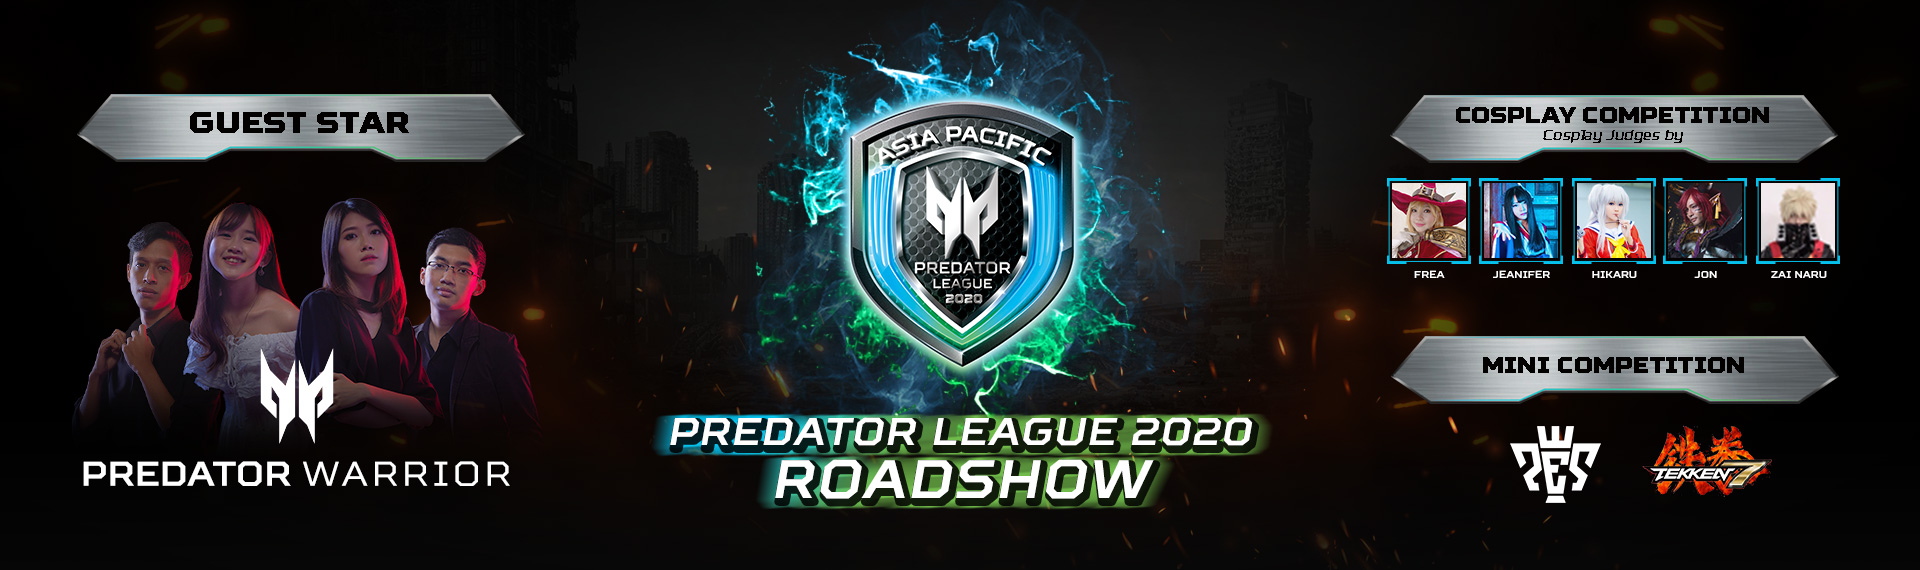 Ikuti Keseruan Roadshow Predator League 2020 di 5 Kota Besar Indonesia!